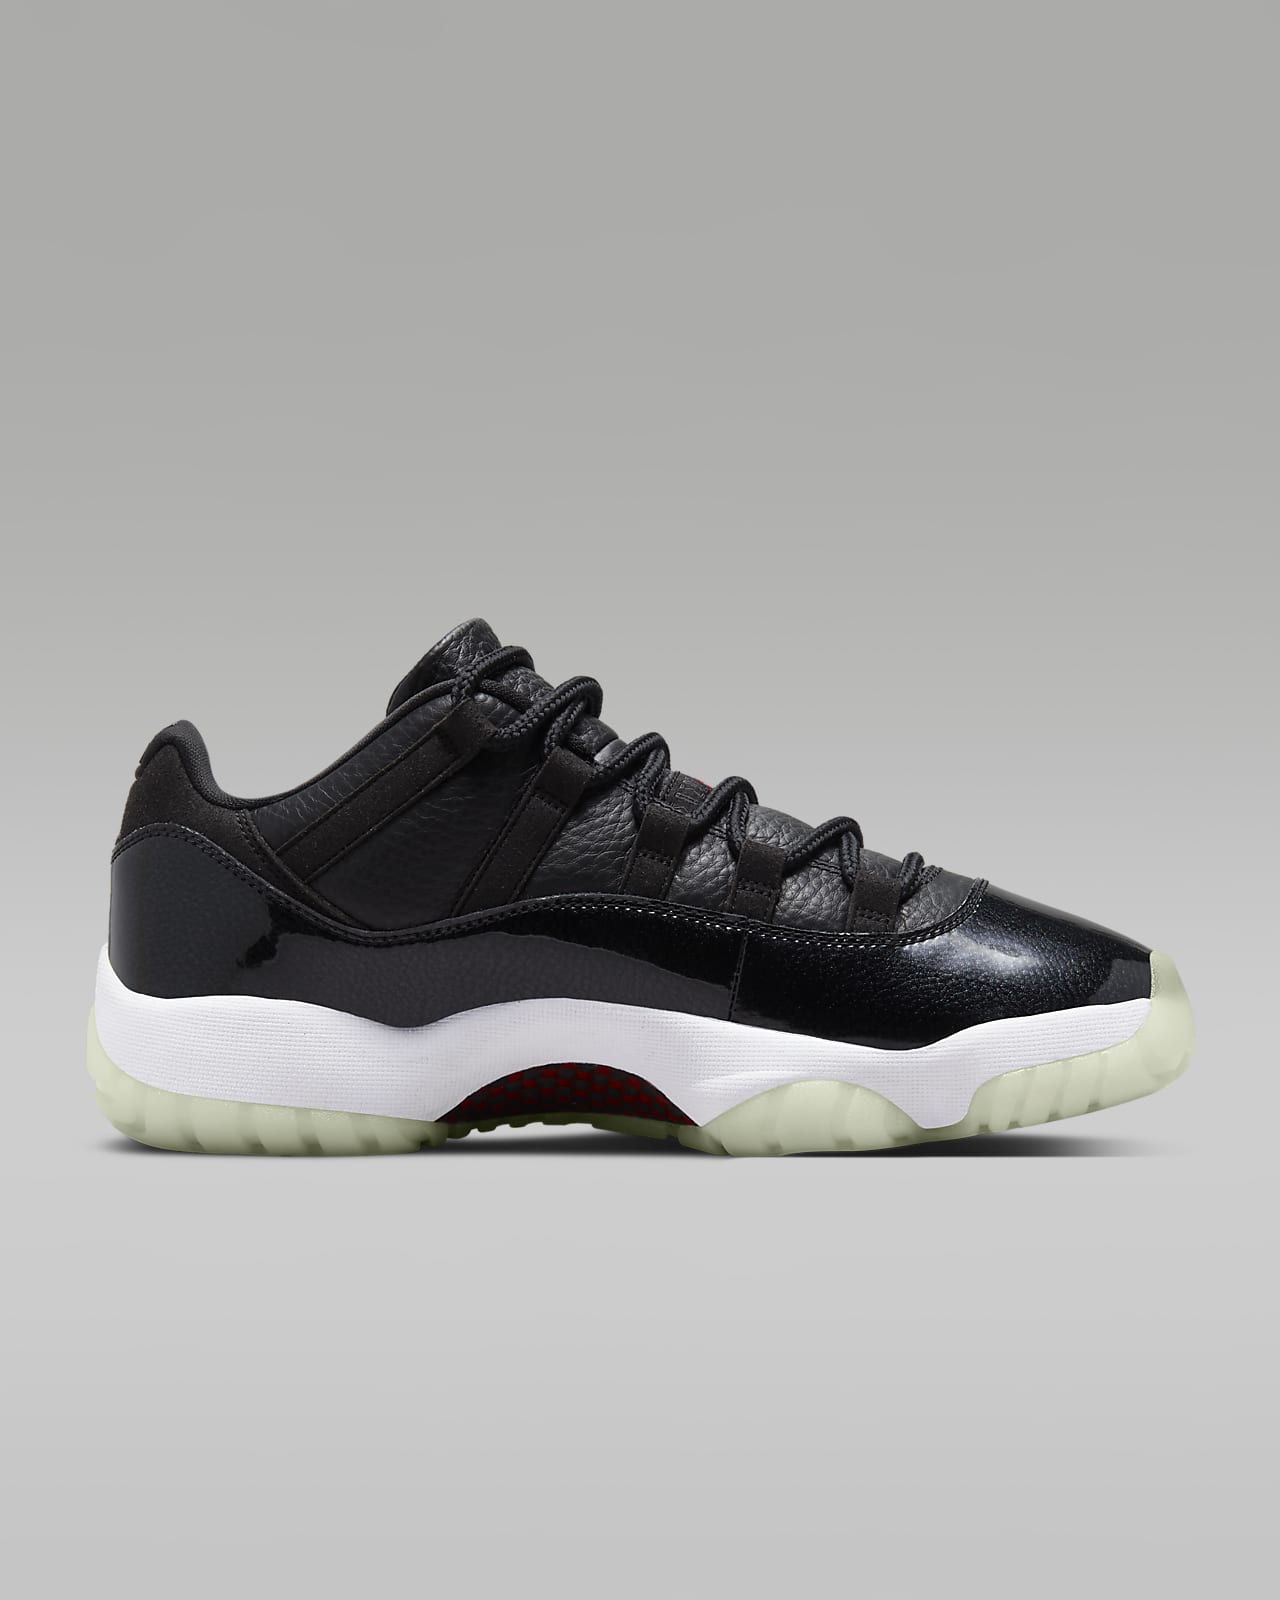 Air Jordan 11 Retro Low Men's Shoes. Nike LU